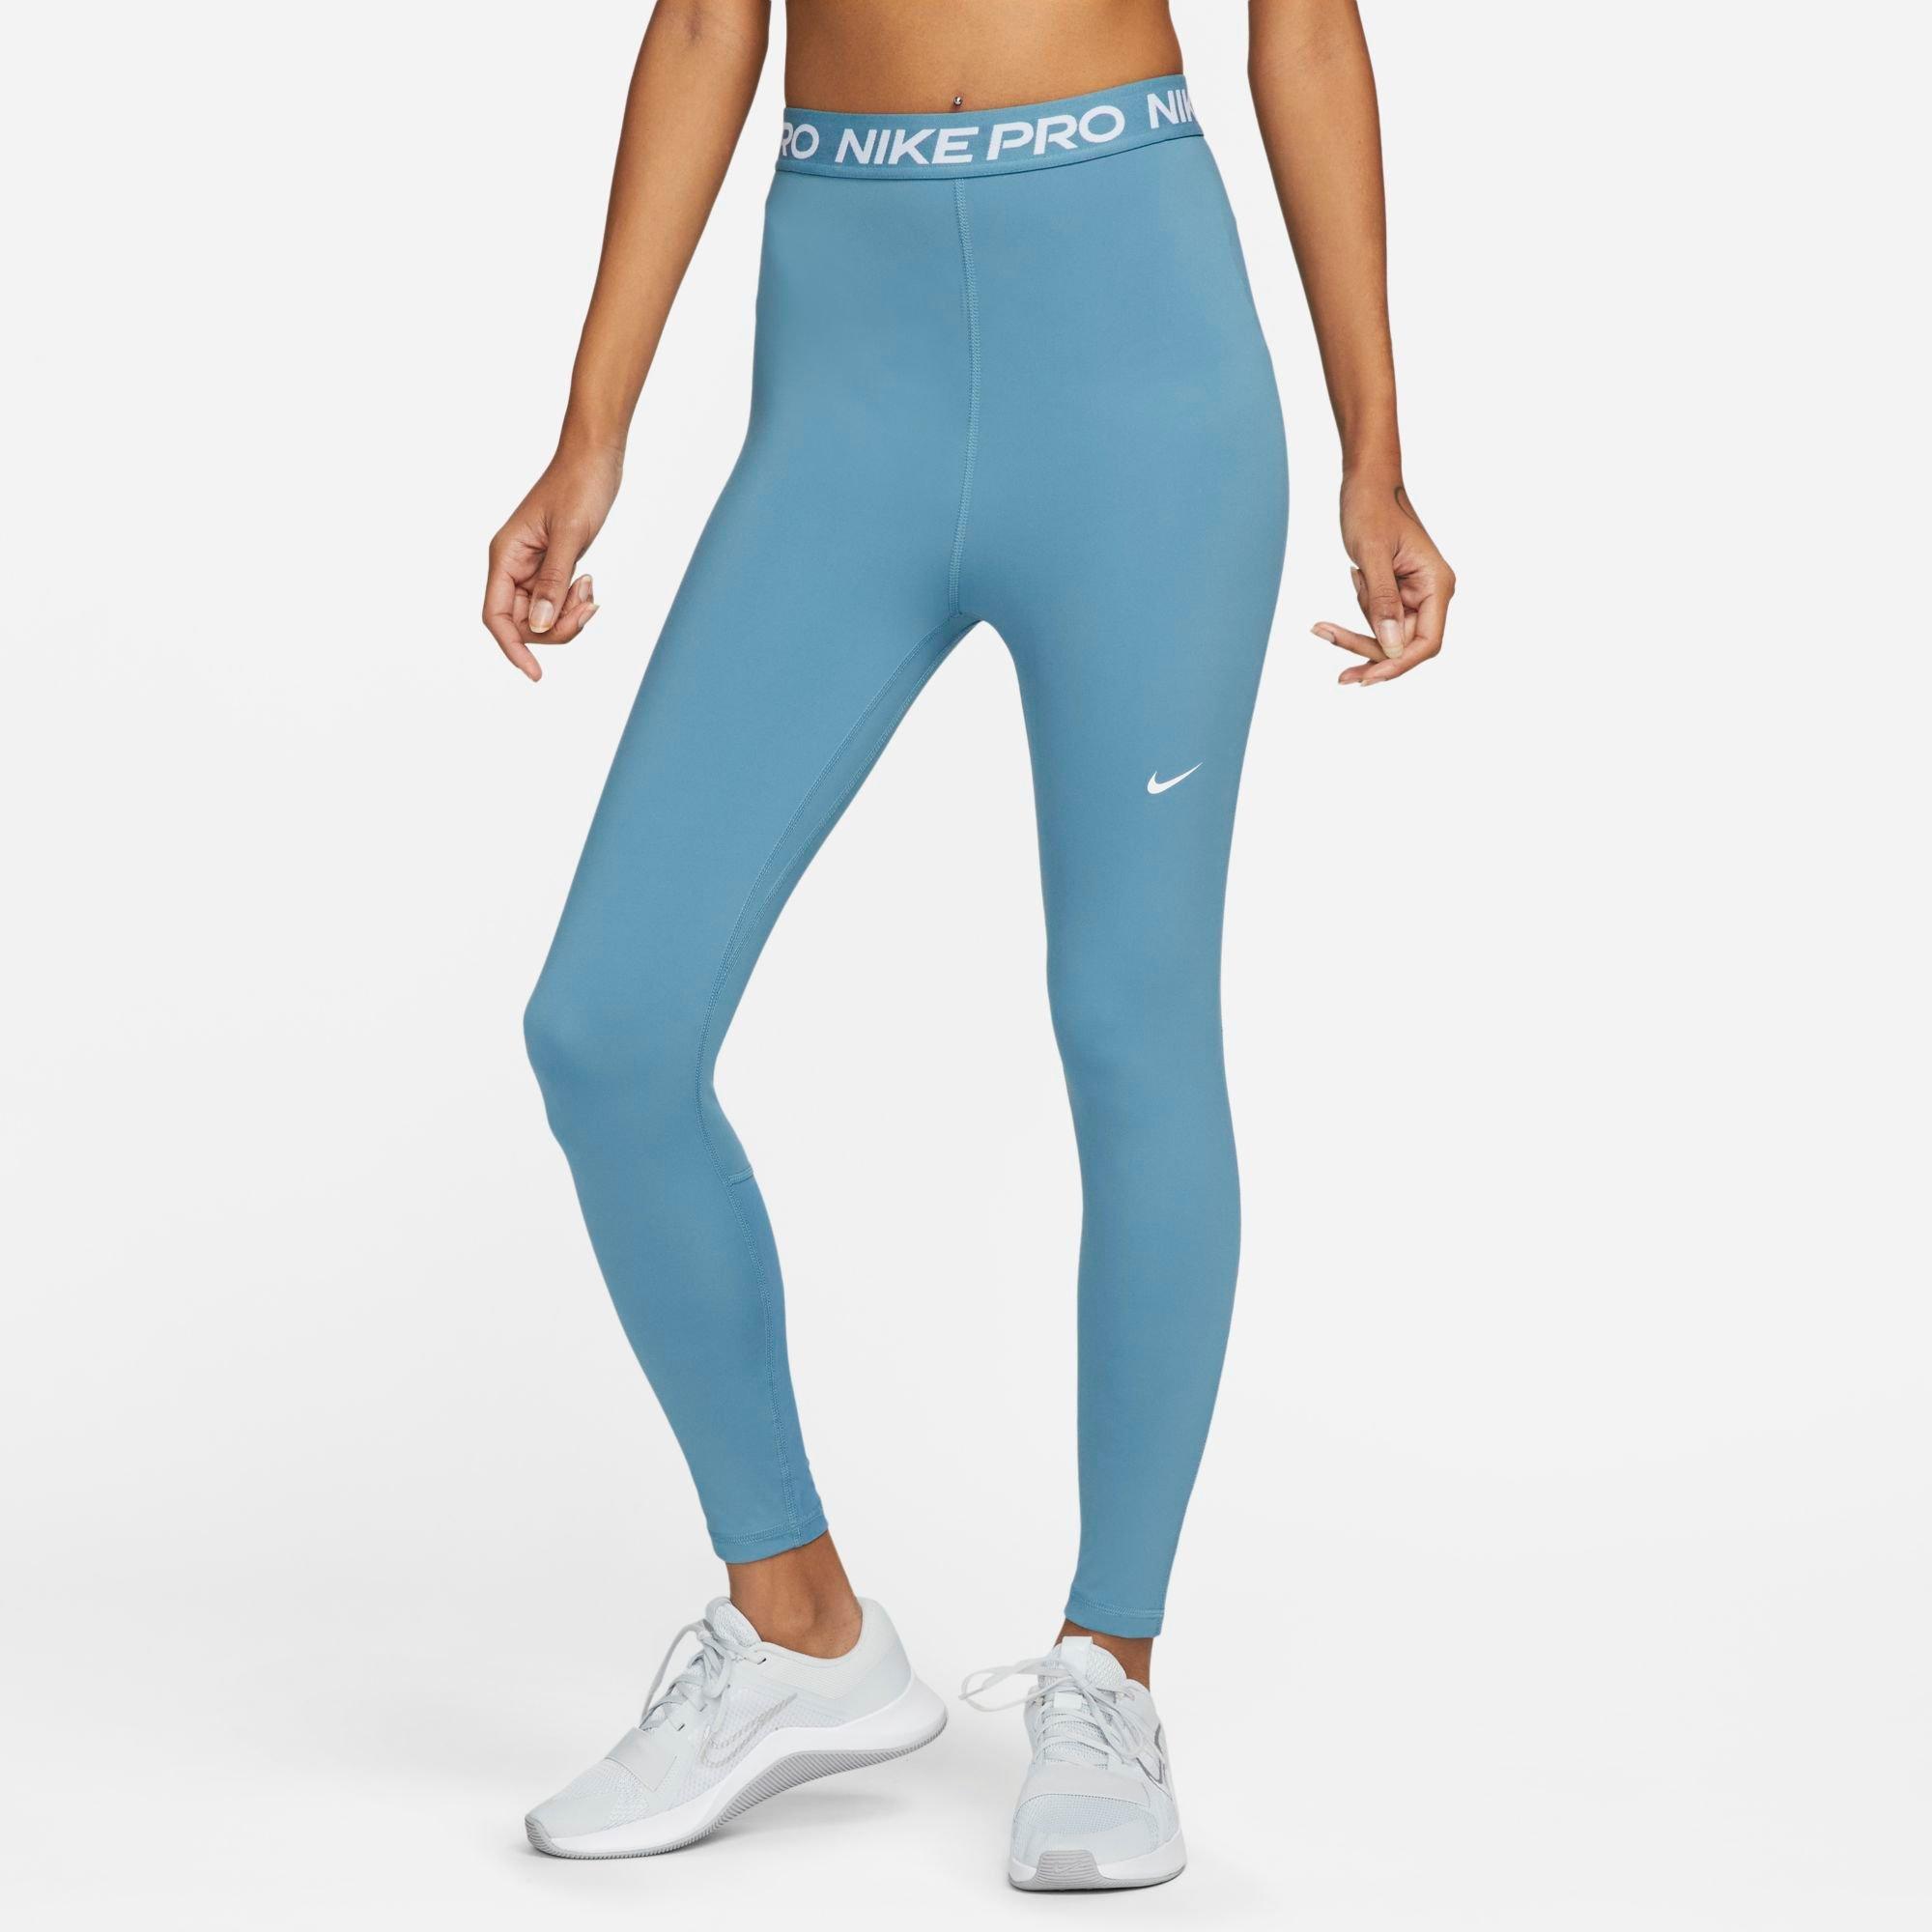 Nike Valerian Blue Leggings. Size XXL - $17 - From Kay